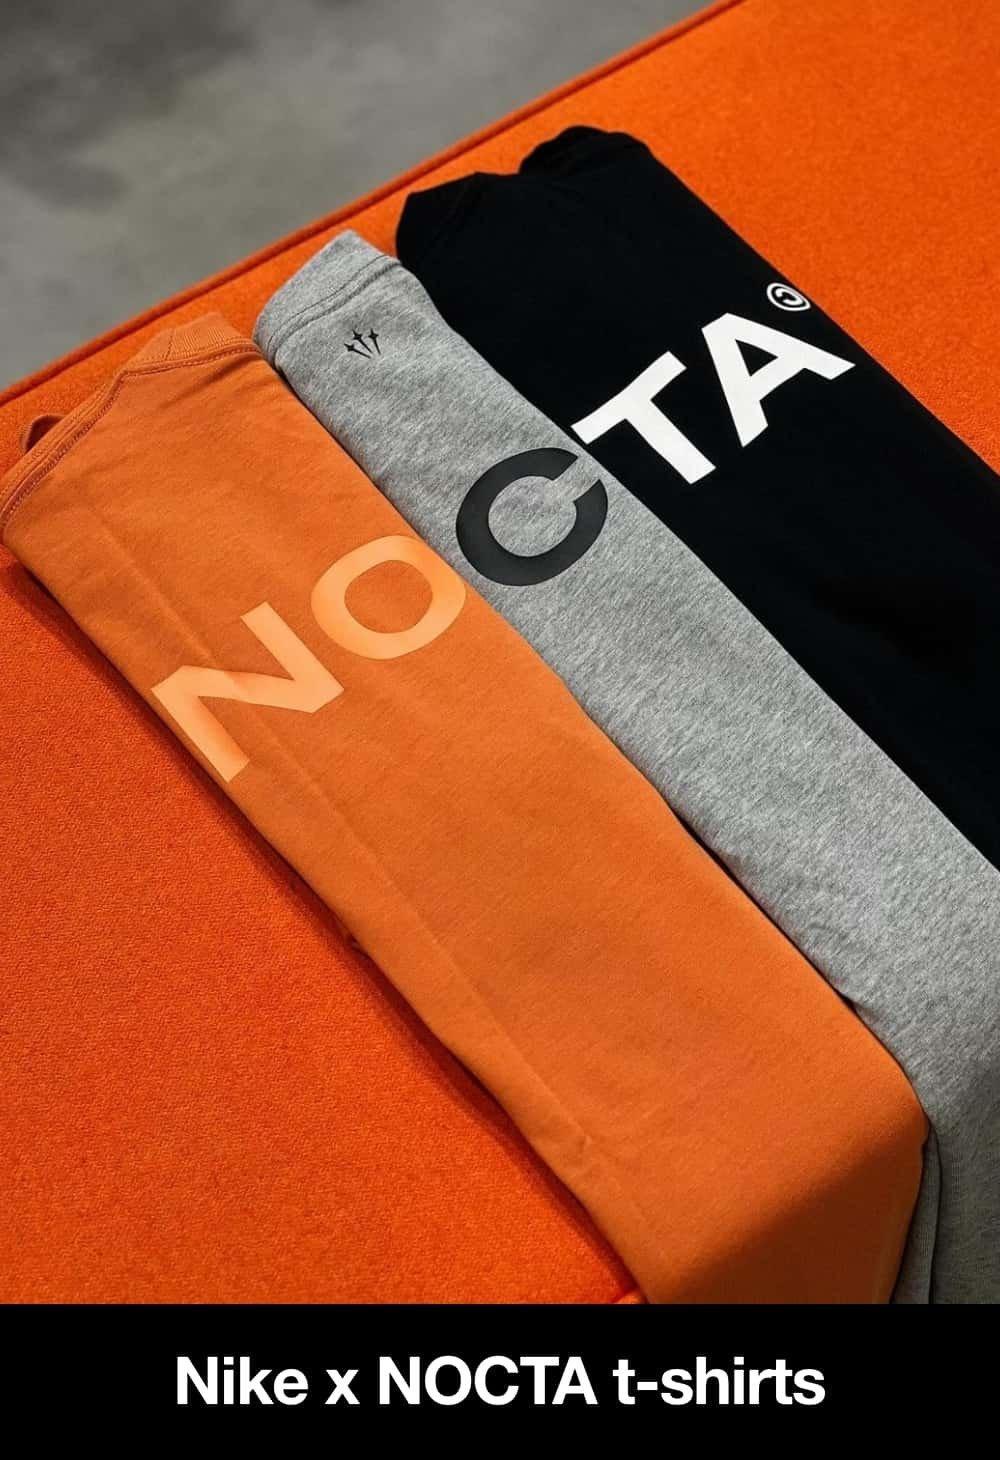 Nike x NOCTA tshirts